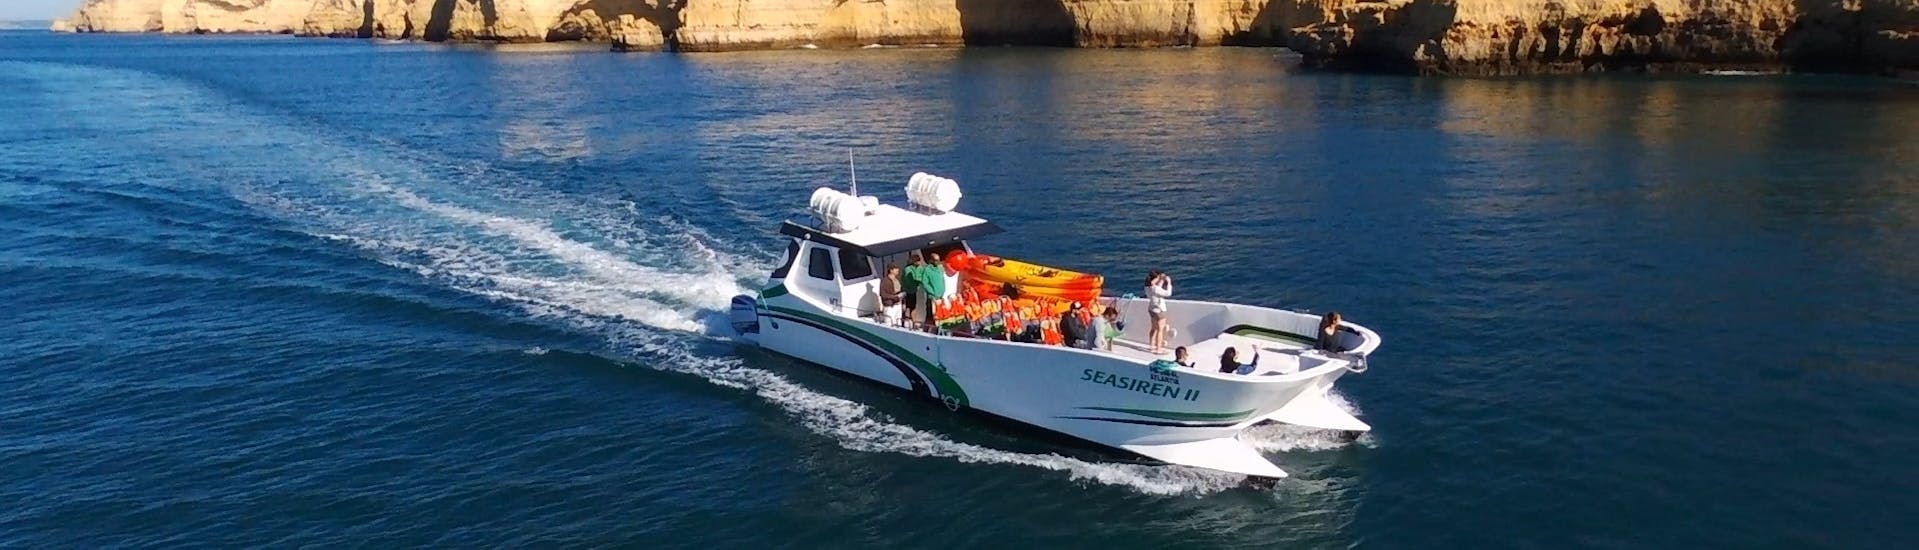 Gita in catamarano privato alle grotte di Benagil e alla spiaggia di Marinha con kayak.